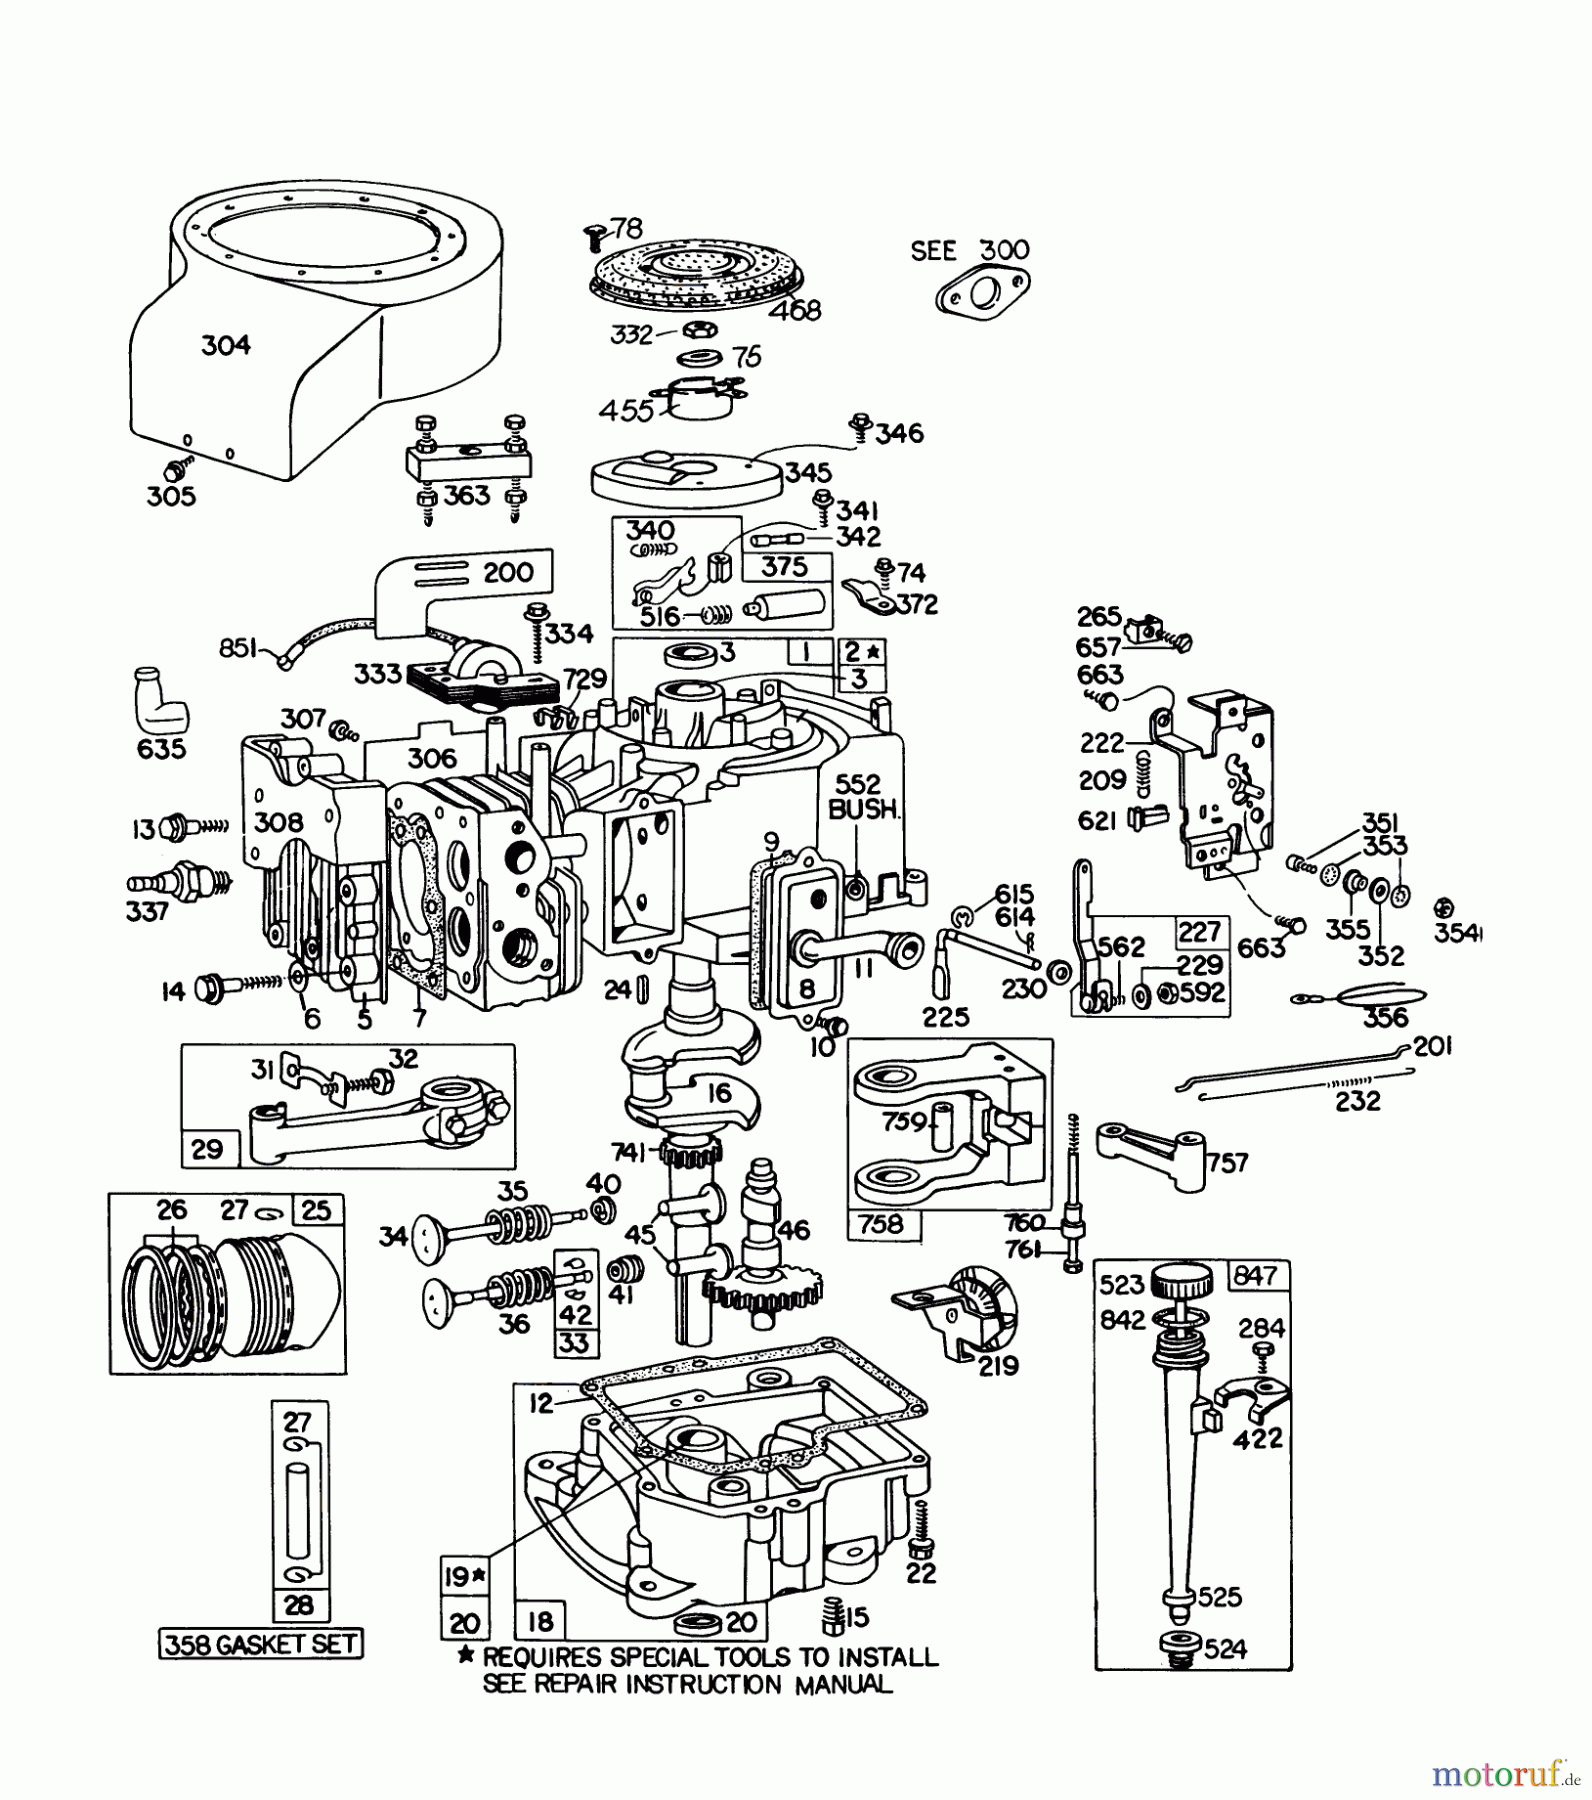  Toro Neu Mowers, Lawn & Garden Tractor Seite 1 57360 (11-32) - Toro 11-32 Lawn Tractor, 1978 (8000001-8999999) ENGINE BRIGGS & STRATTON MODEL 191707-5633-01 (MODEL 57300)